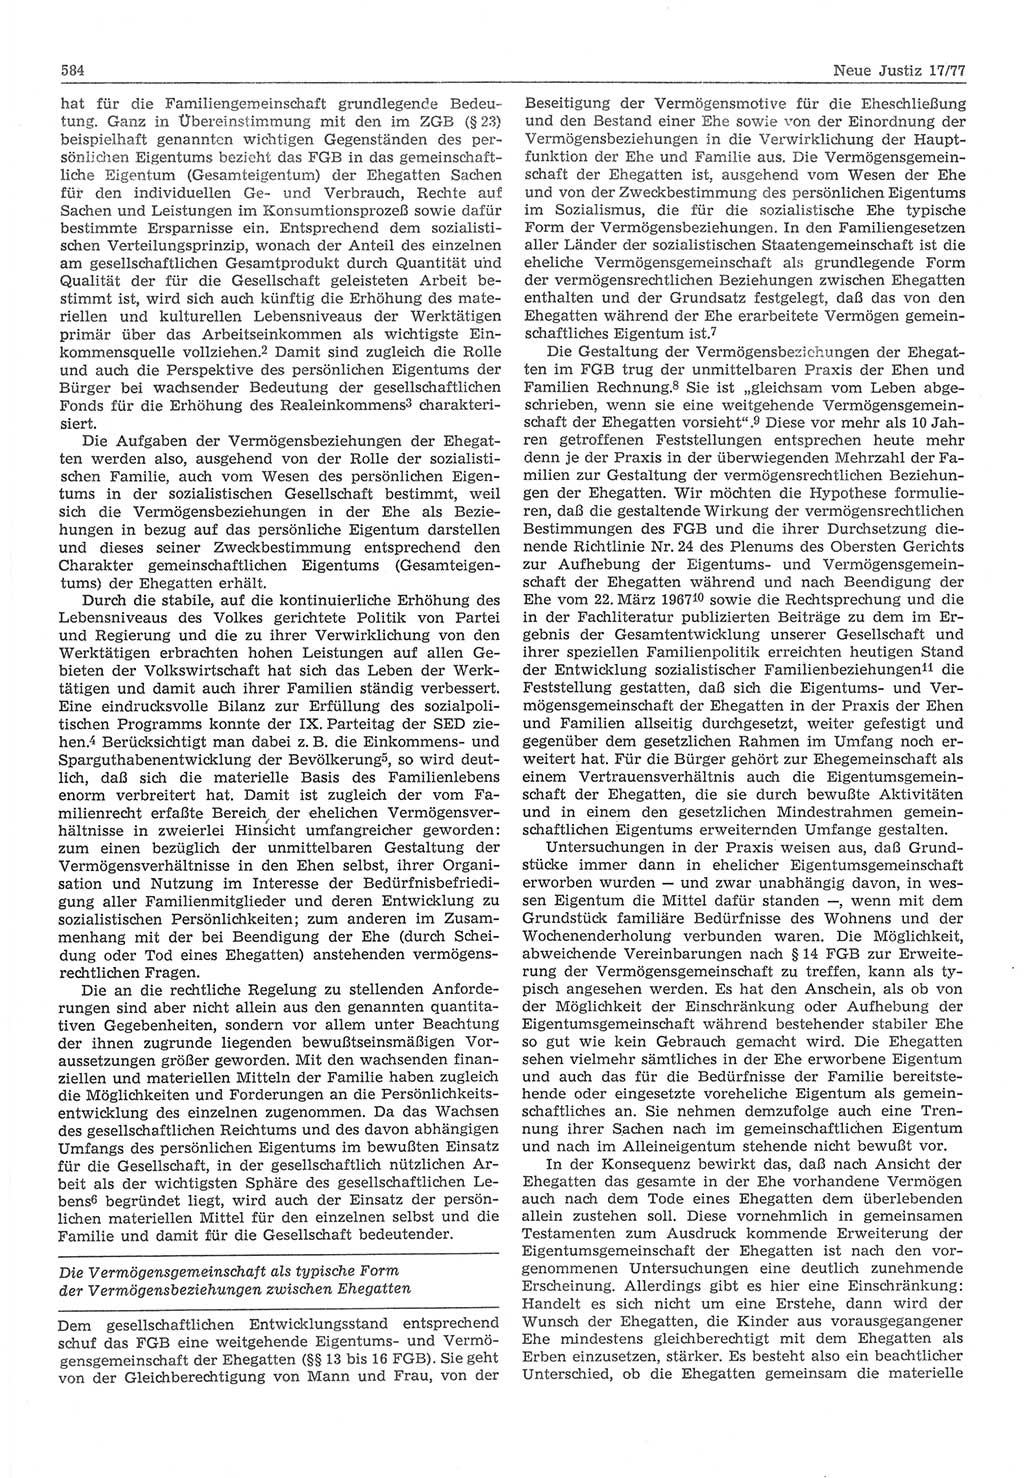 Neue Justiz (NJ), Zeitschrift für Recht und Rechtswissenschaft-Zeitschrift, sozialistisches Recht und Gesetzlichkeit, 31. Jahrgang 1977, Seite 584 (NJ DDR 1977, S. 584)